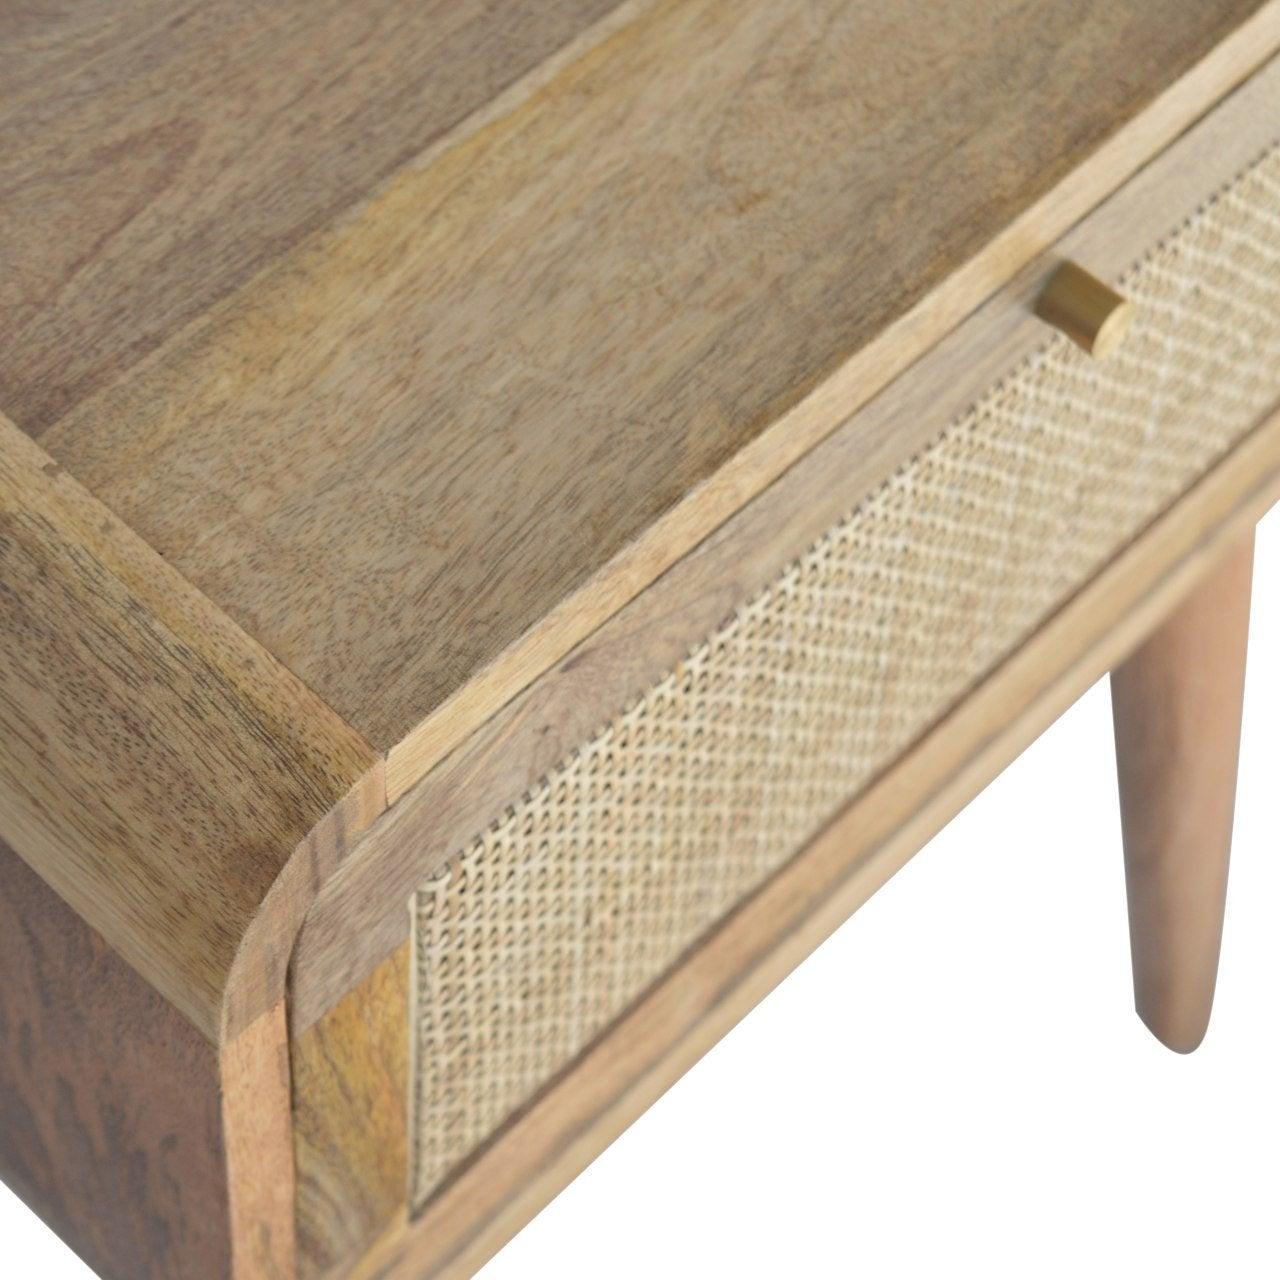 Woven bedside table table - crimblefest furniture - image 5